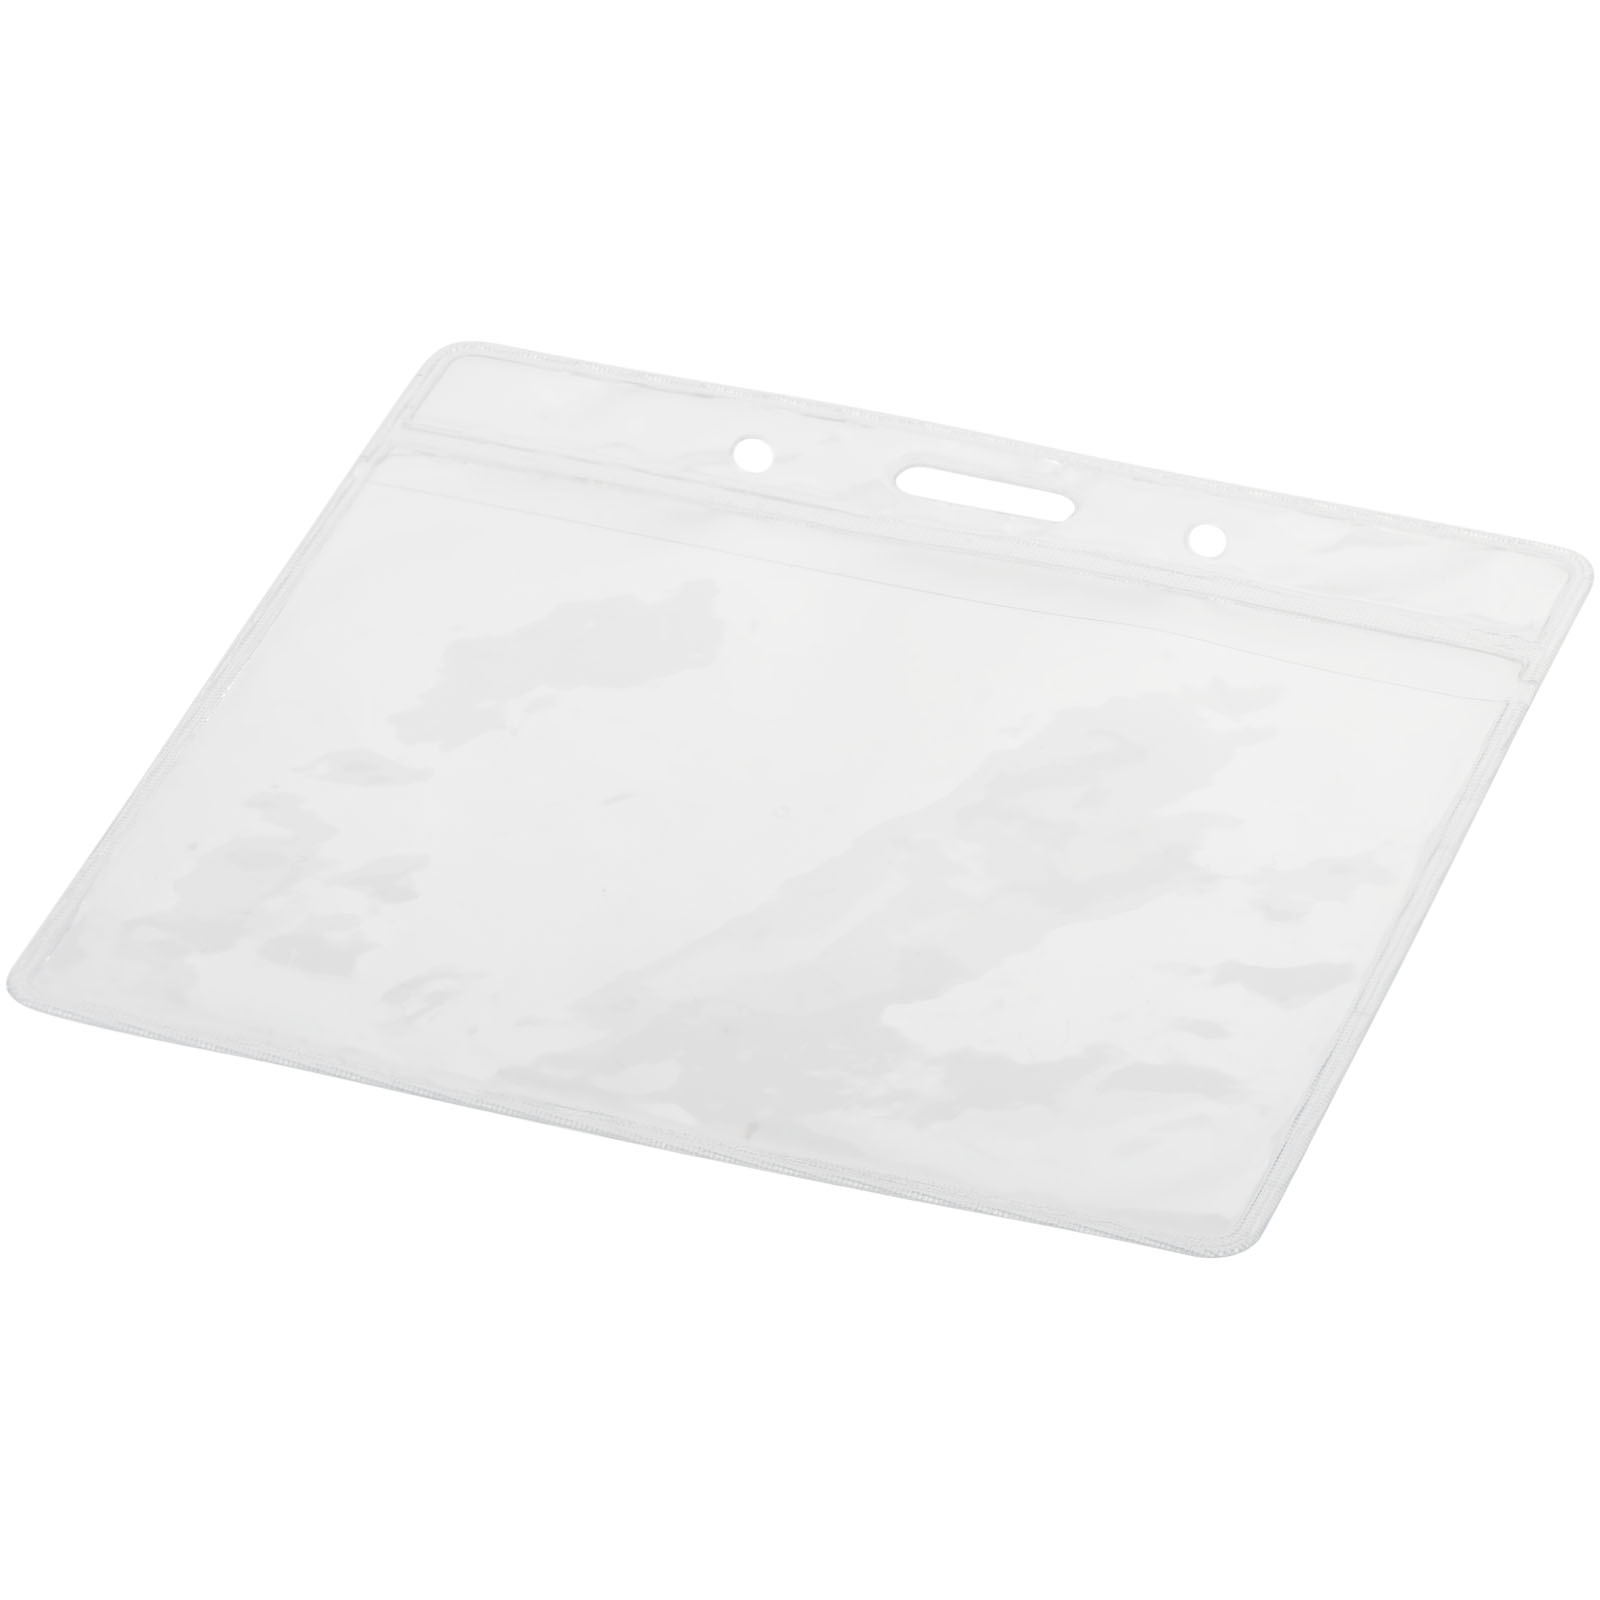 Giveaways - Serge transparent badge holder